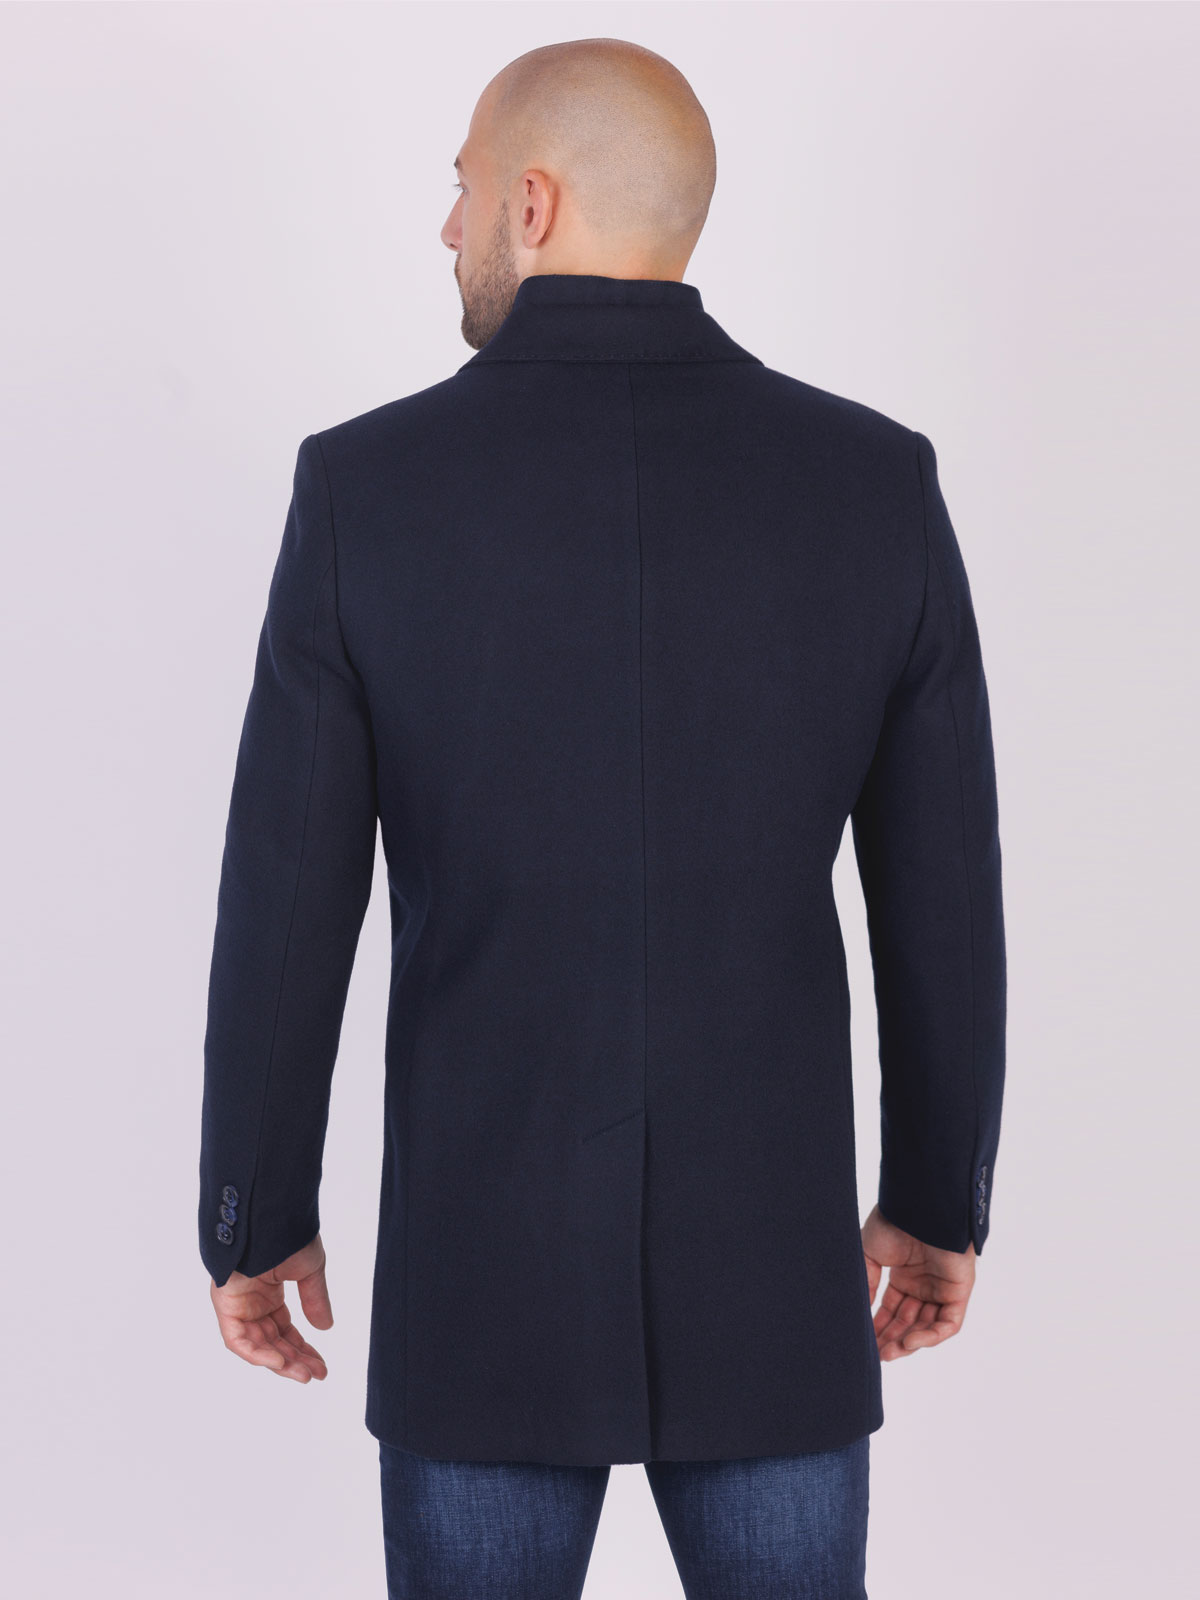 Παλτό μπλε navy σε μαλλί με ακρυλικό - 65111 € 156.35 img2